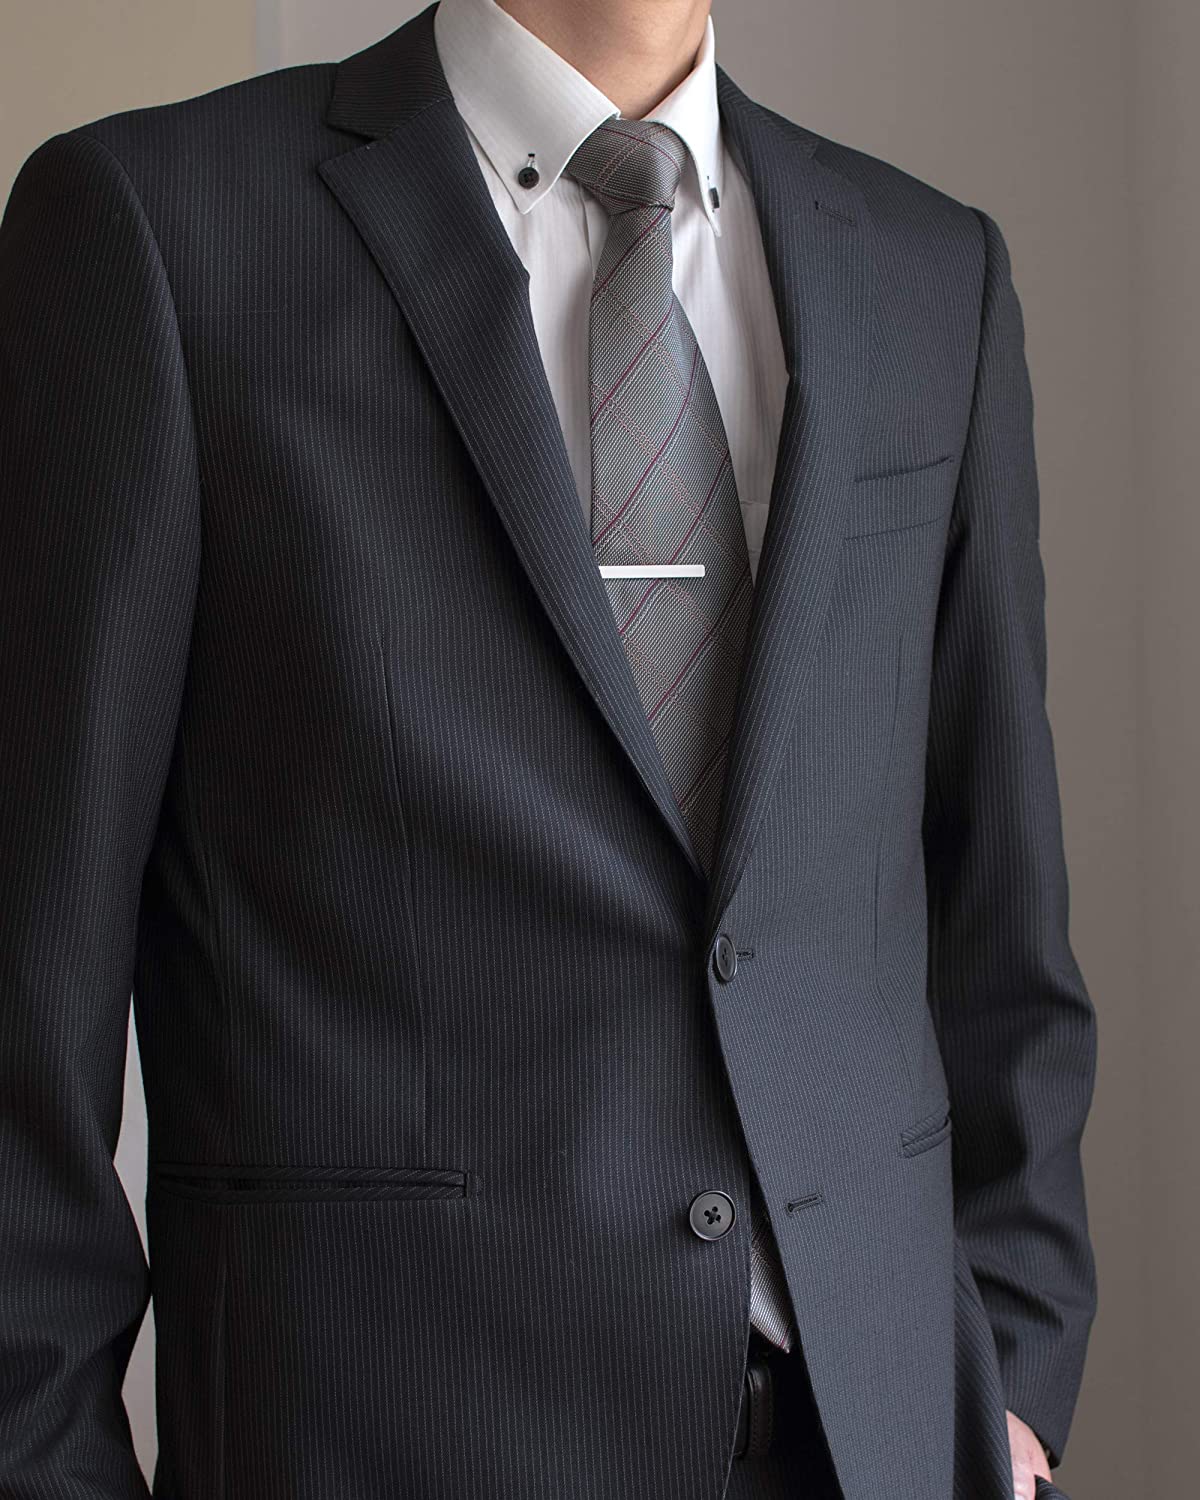 人気カラーの ネクタイピン シルバー タイピン ネクタイ スーツ ビジネス シンプル 紳士